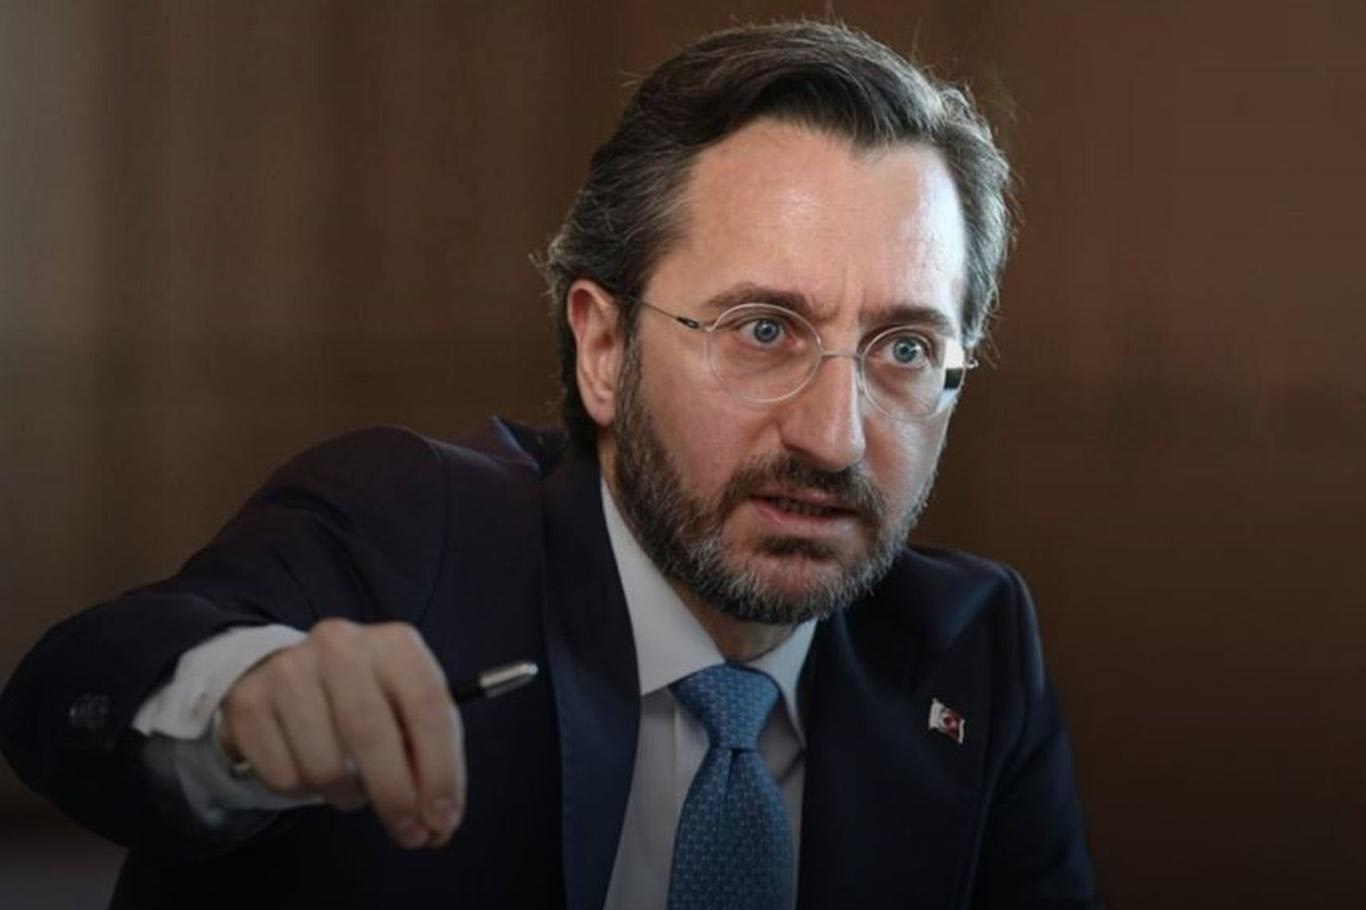 İletişim Başkanı Altun: “BAE’nin anlaşması, Türkiye için yok hükmündedir”